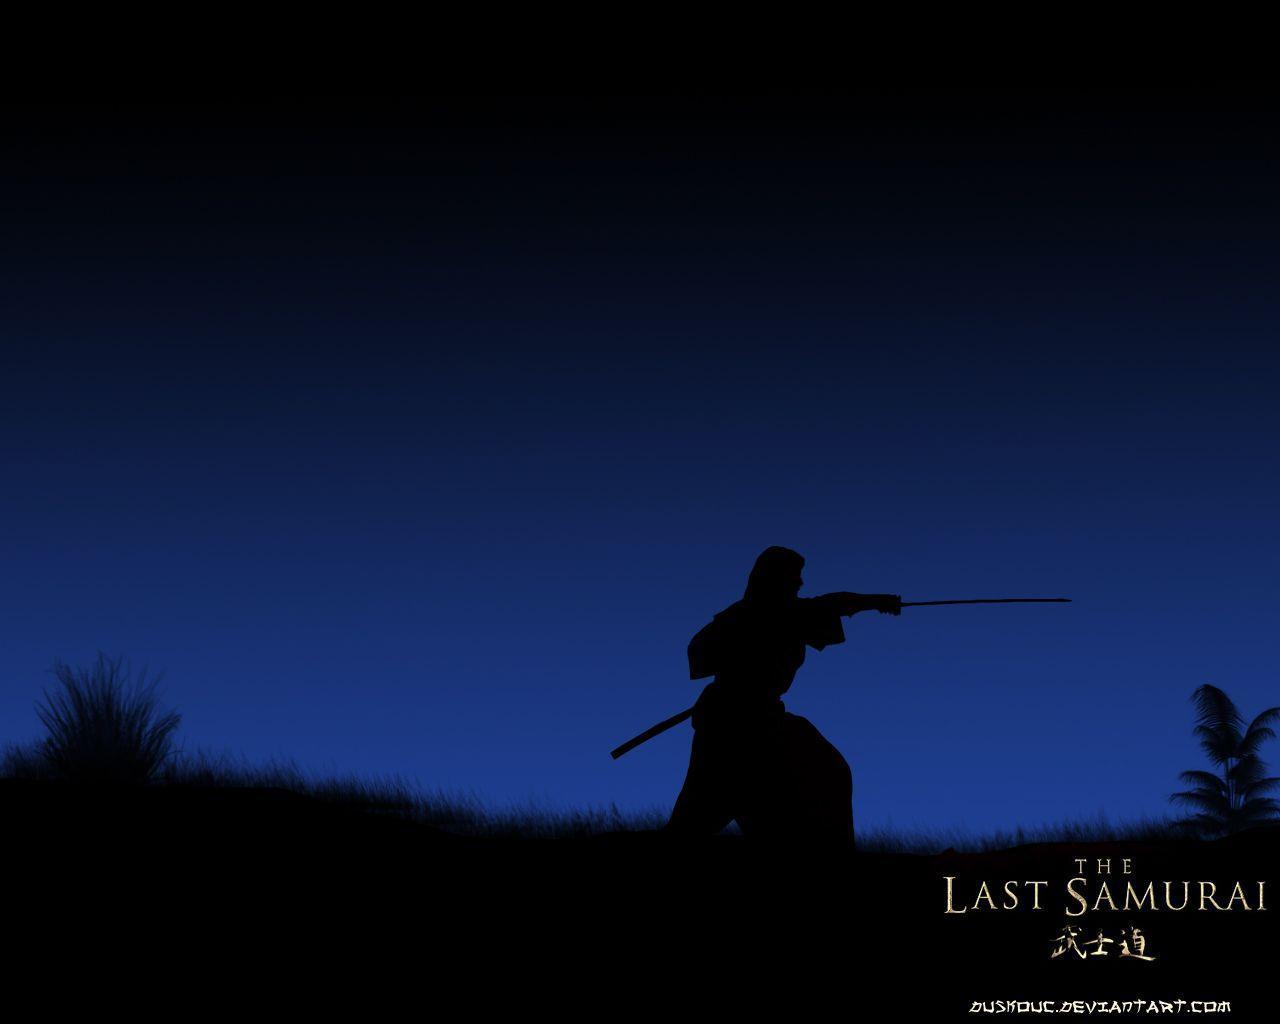 The Last Samurai night